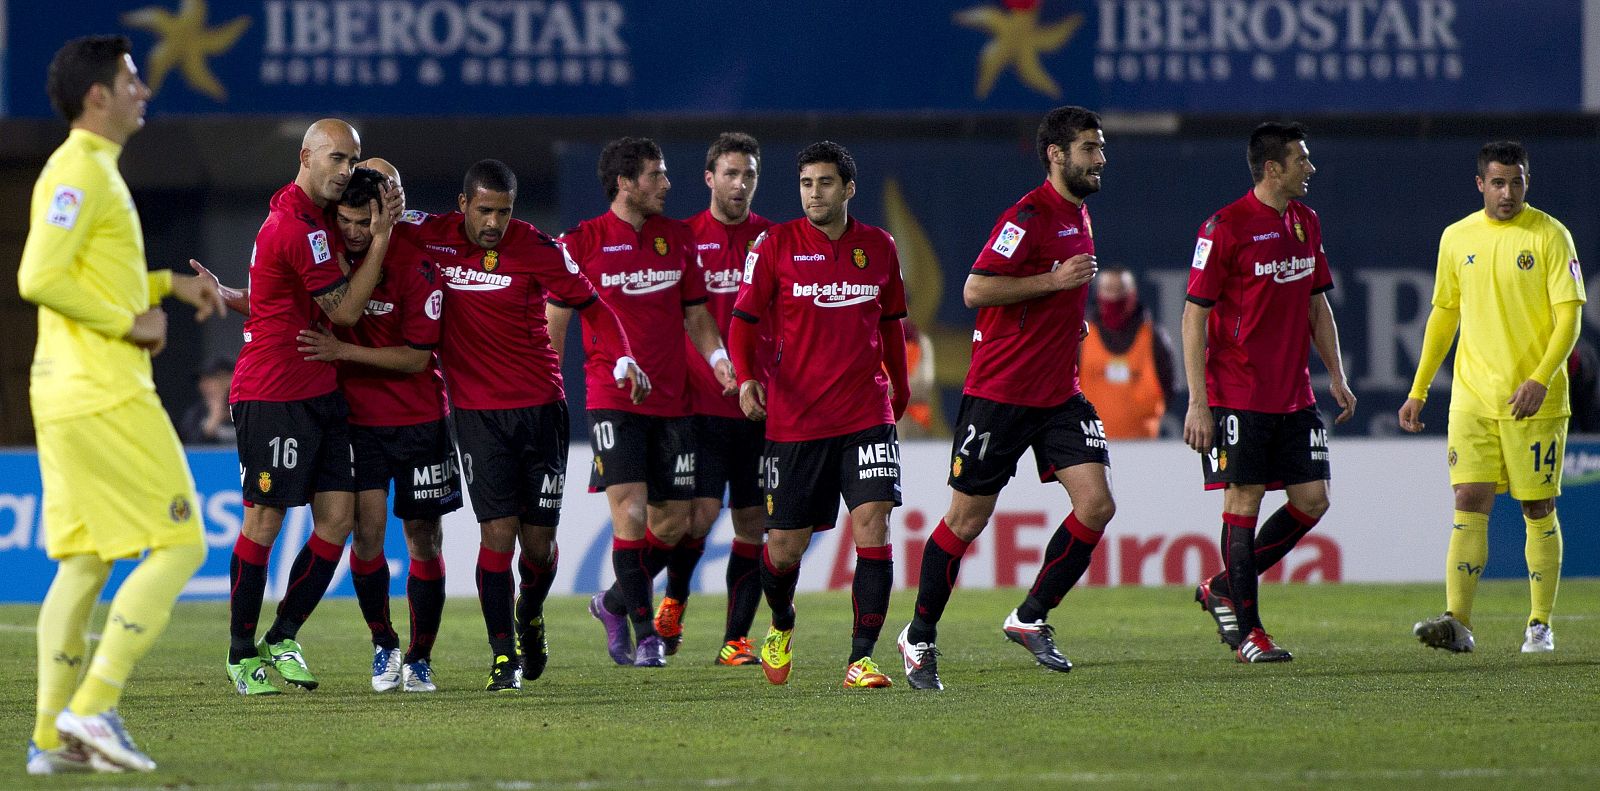 El defensa del Mallorca José Carlos de Araujo Nunes (i) celebra su gol, el cuarto de su equipo, junto a sus compañeros.